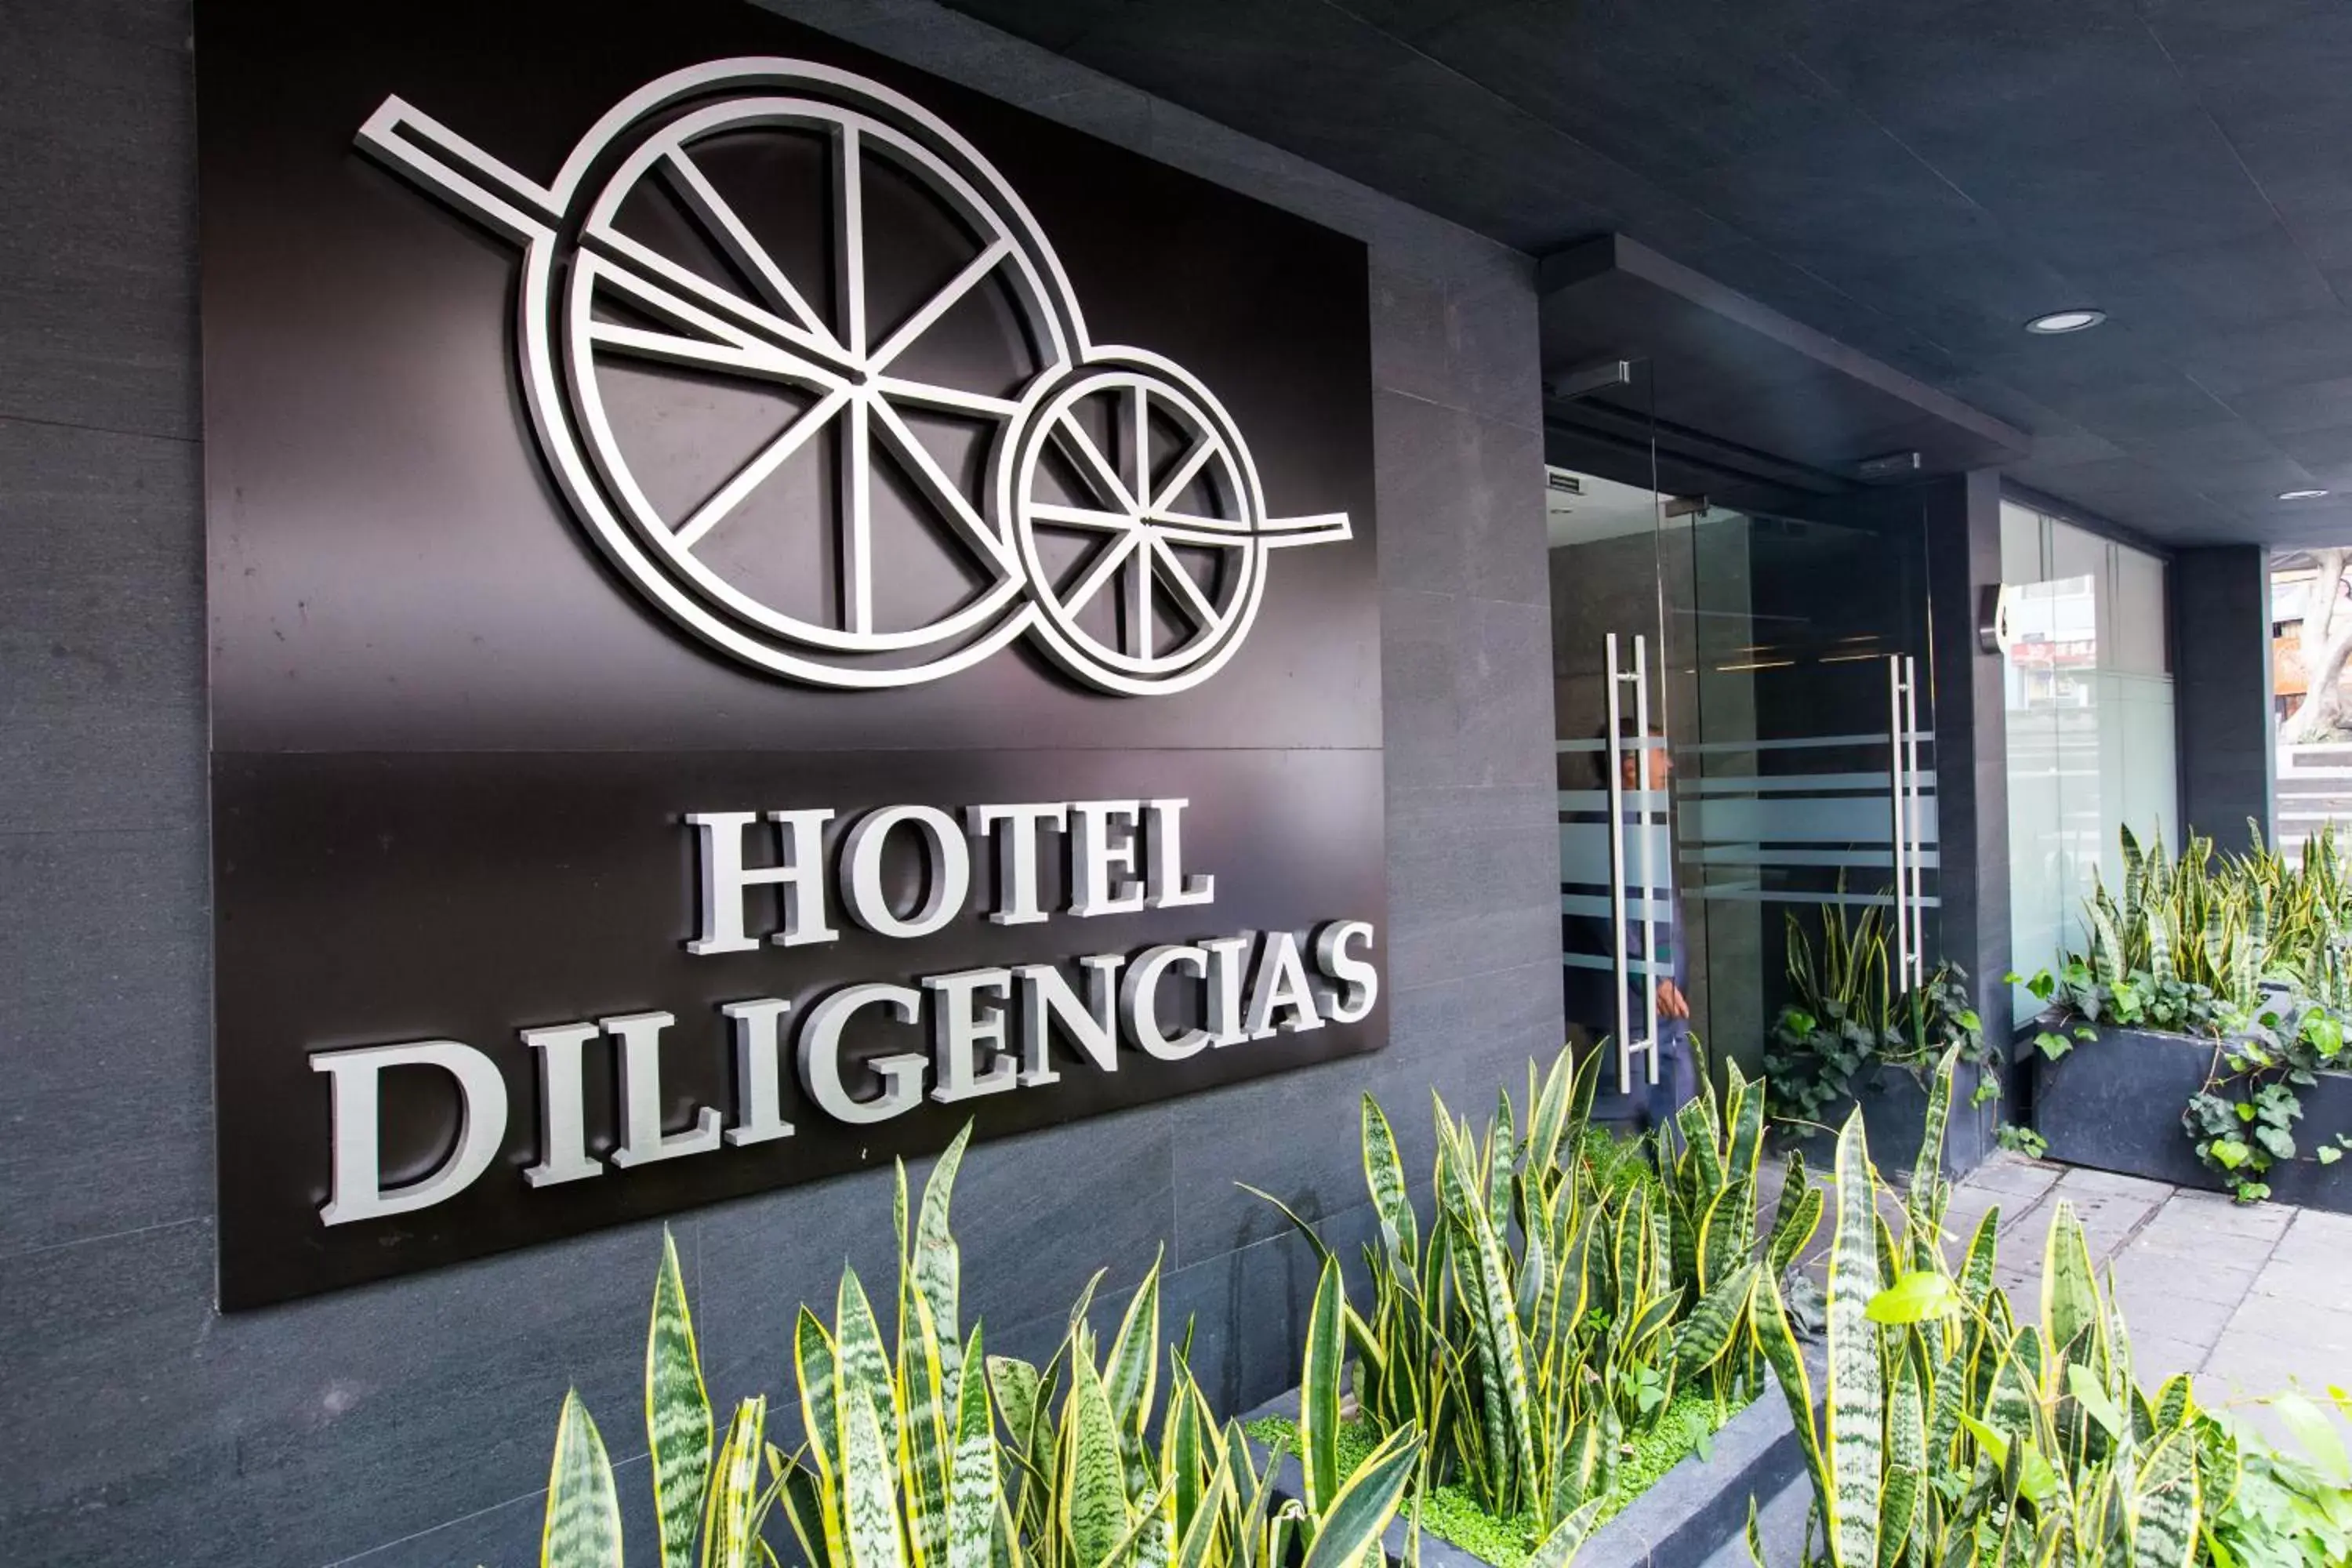 Facade/entrance in Hotel Diligencias